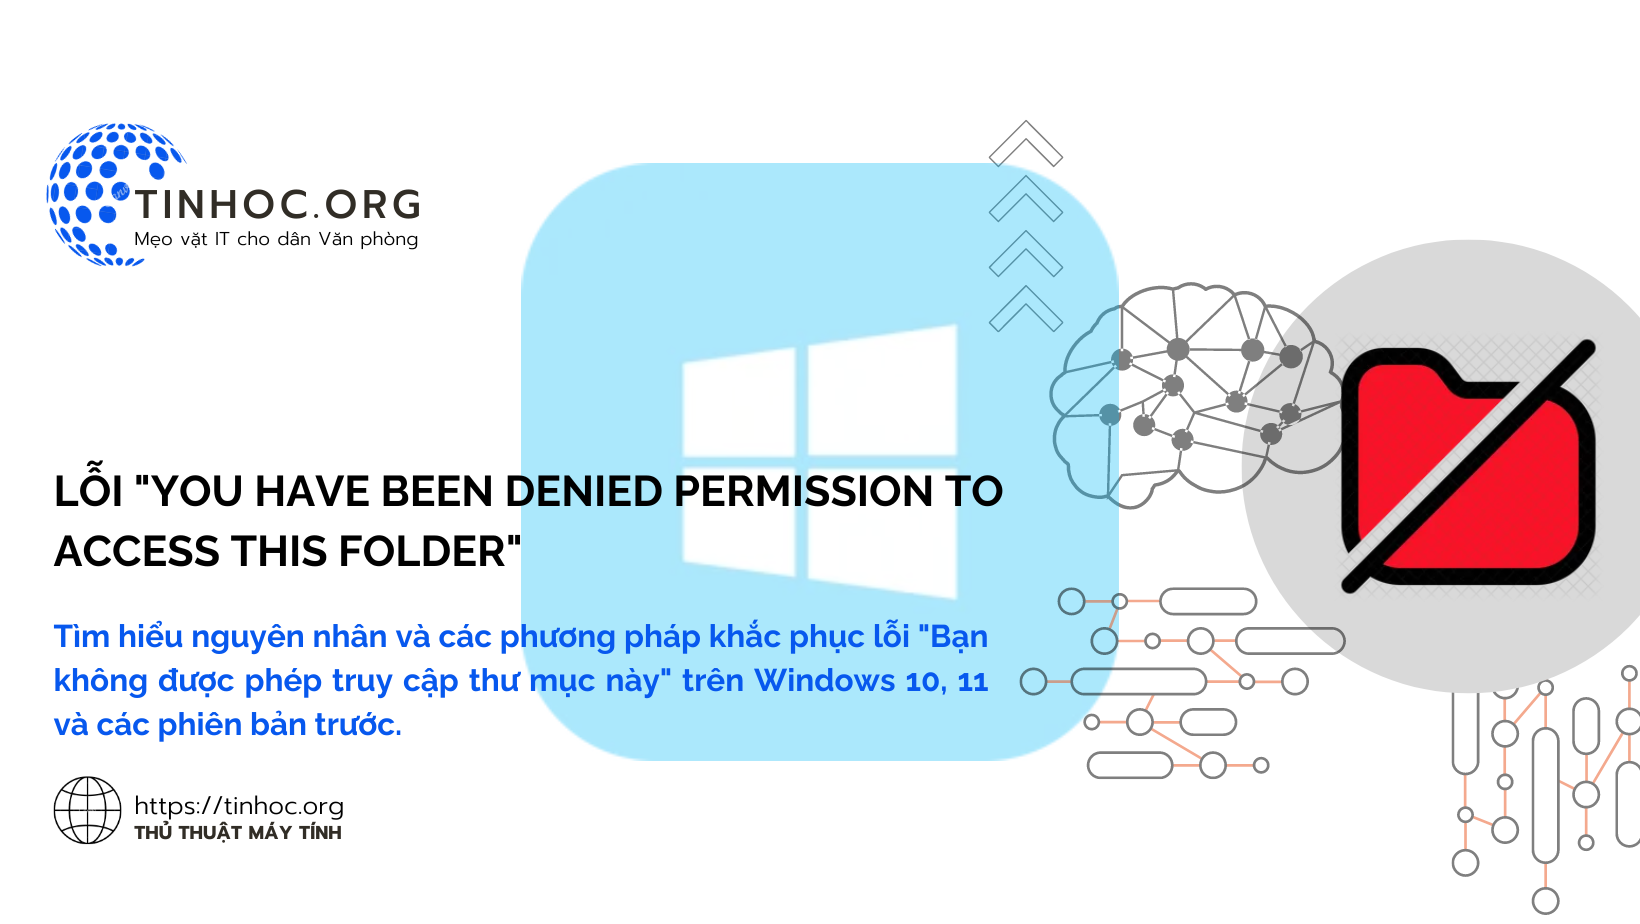 Tìm hiểu nguyên nhân và các phương pháp khắc phục lỗi "Bạn không được phép truy cập thư mục này" trên Windows 10, 11 và các phiên bản trước.